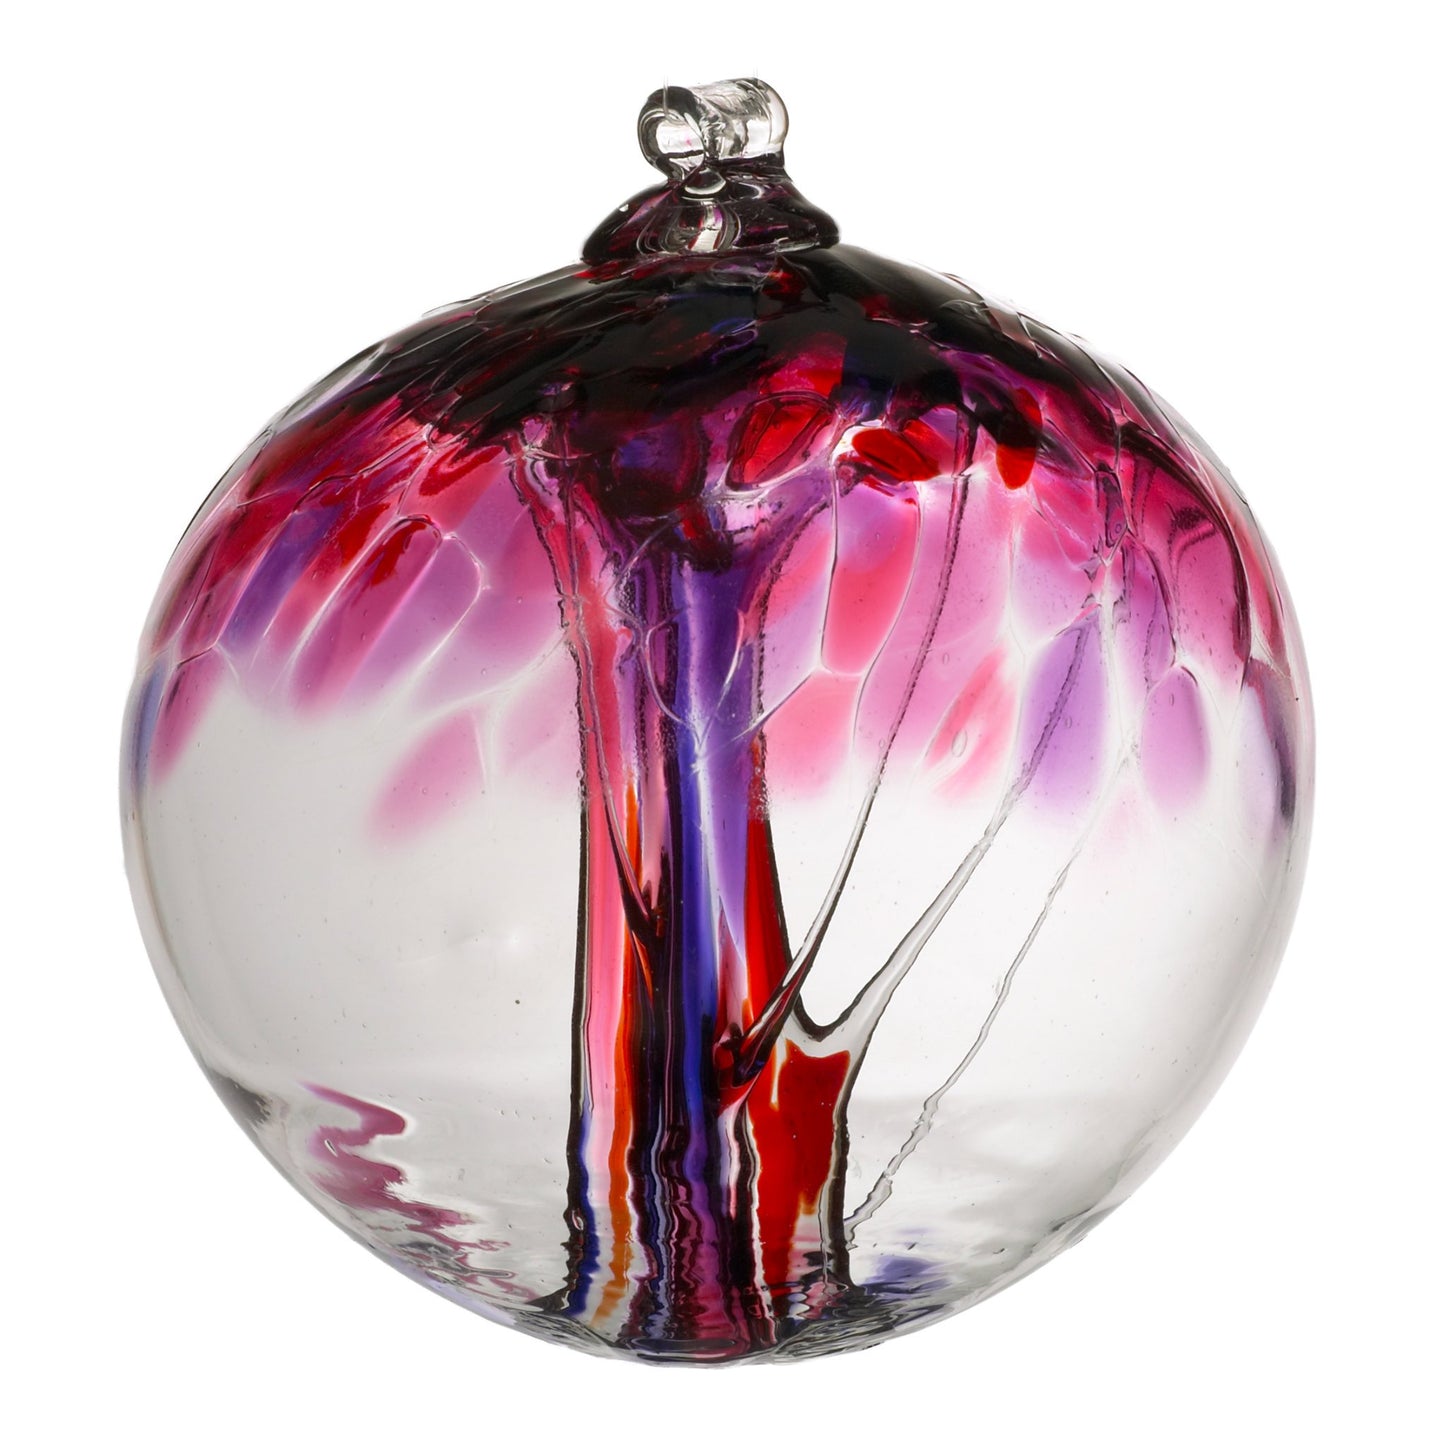 Kitras Art Glass - Tree of Love - 6" diameter